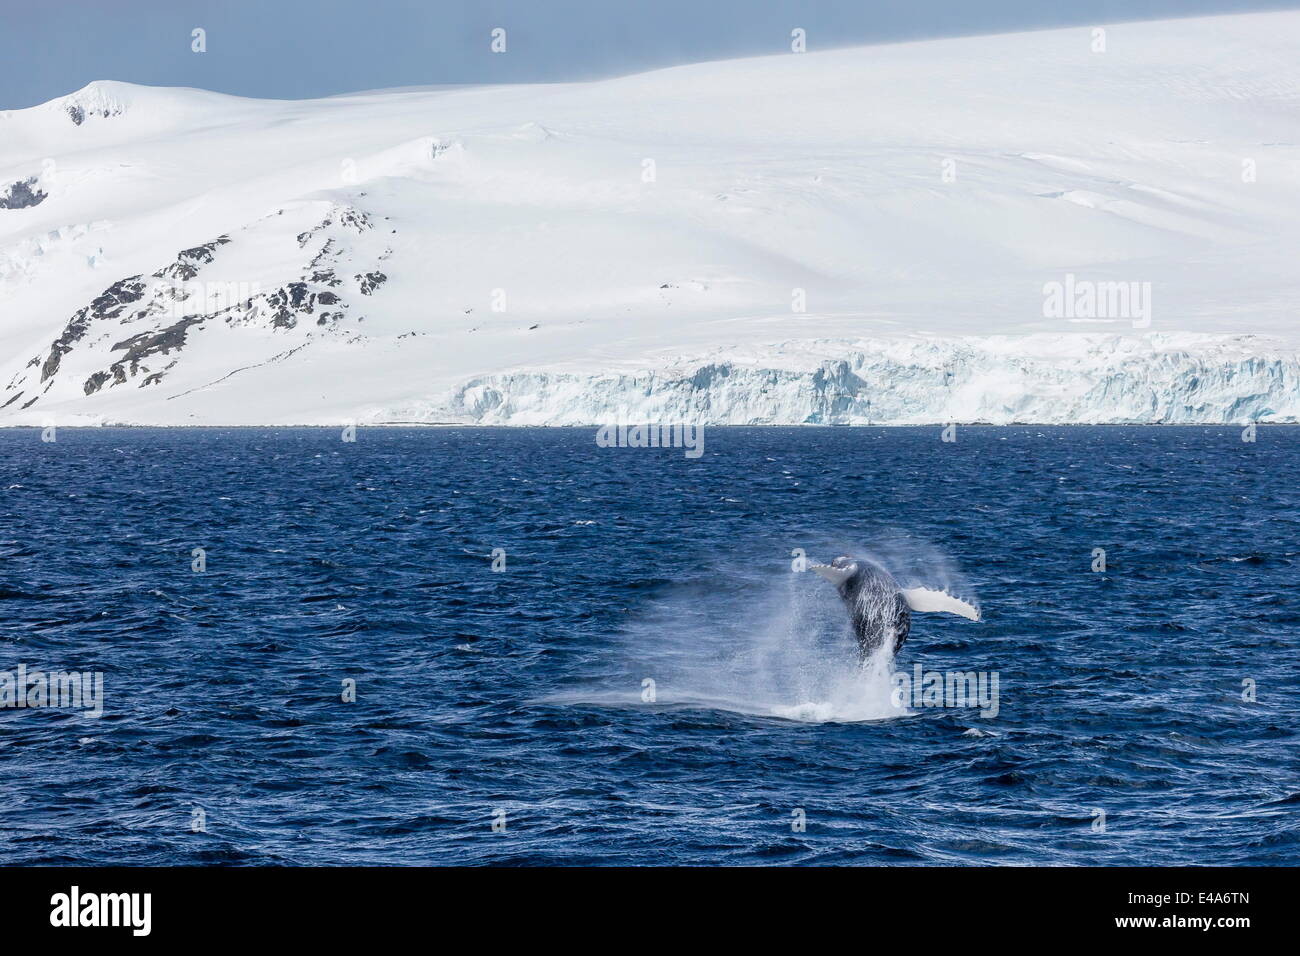 La ballena jorobada (Megaptera novaeangliae) infracción, el Estrecho de Gerlache, La Antártica, regiones polares Foto de stock